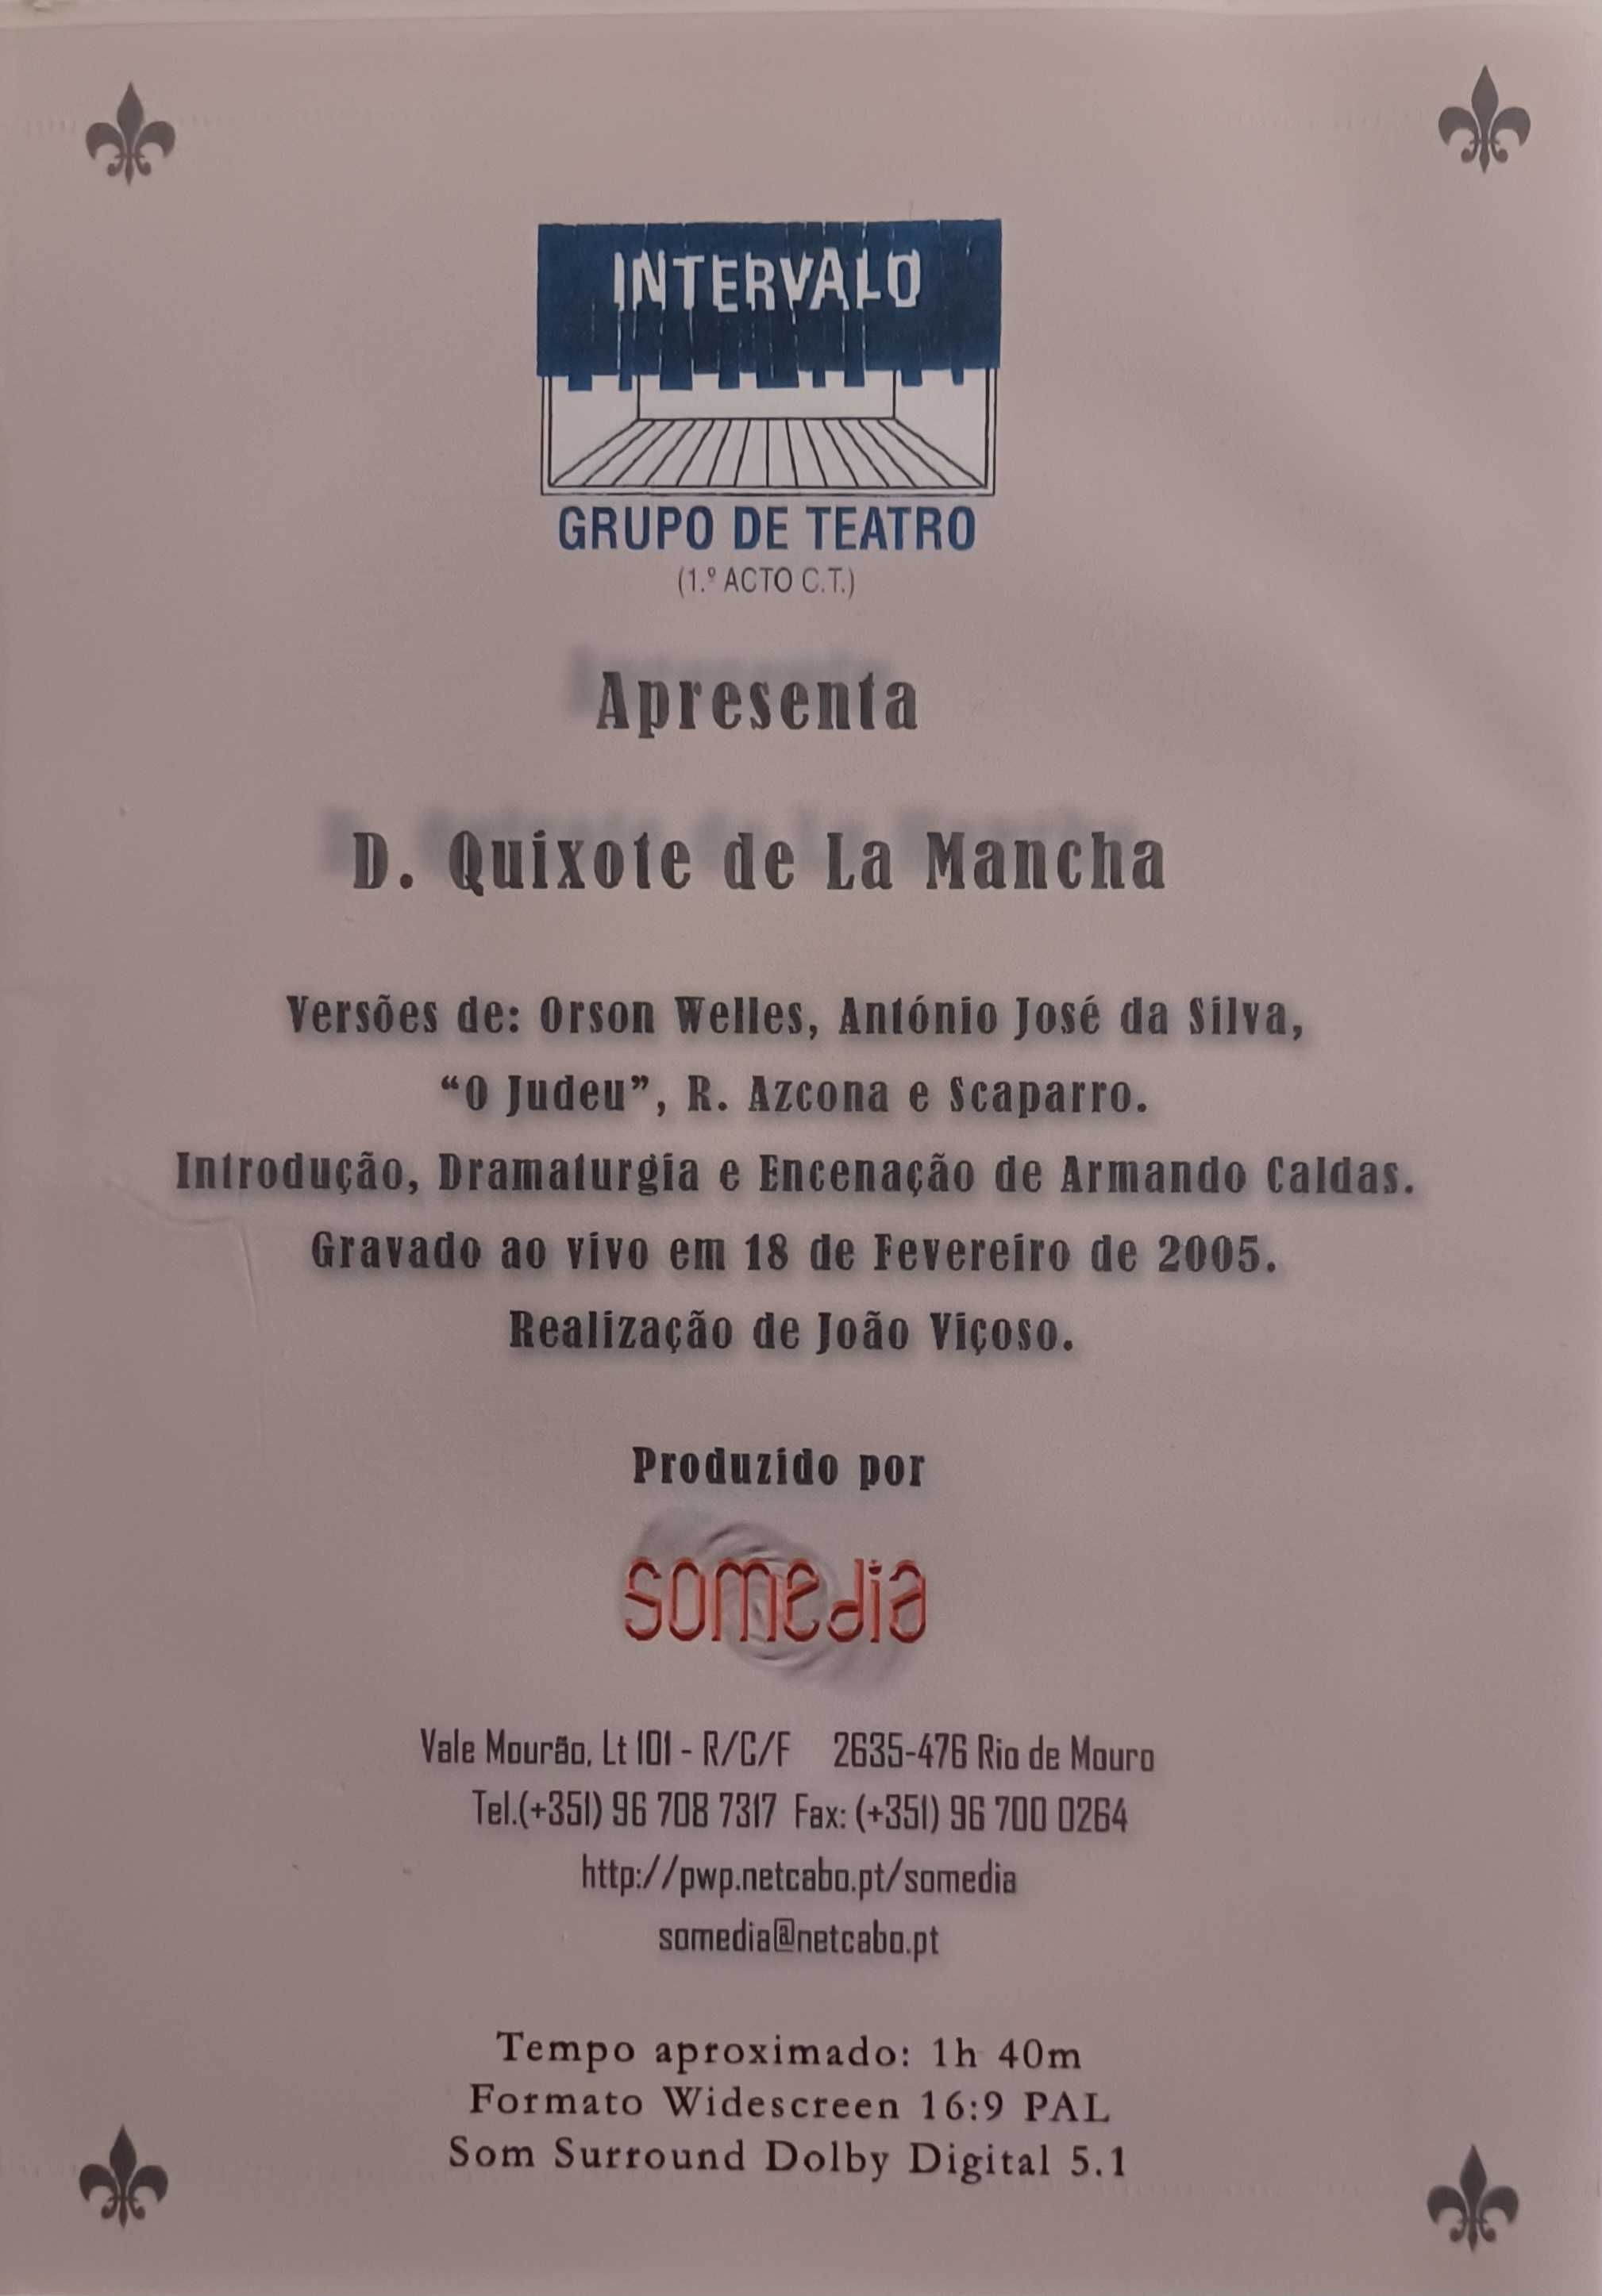 D. Quixote De La Mancha - Grupo Teatro Intervalo (1º Acto)